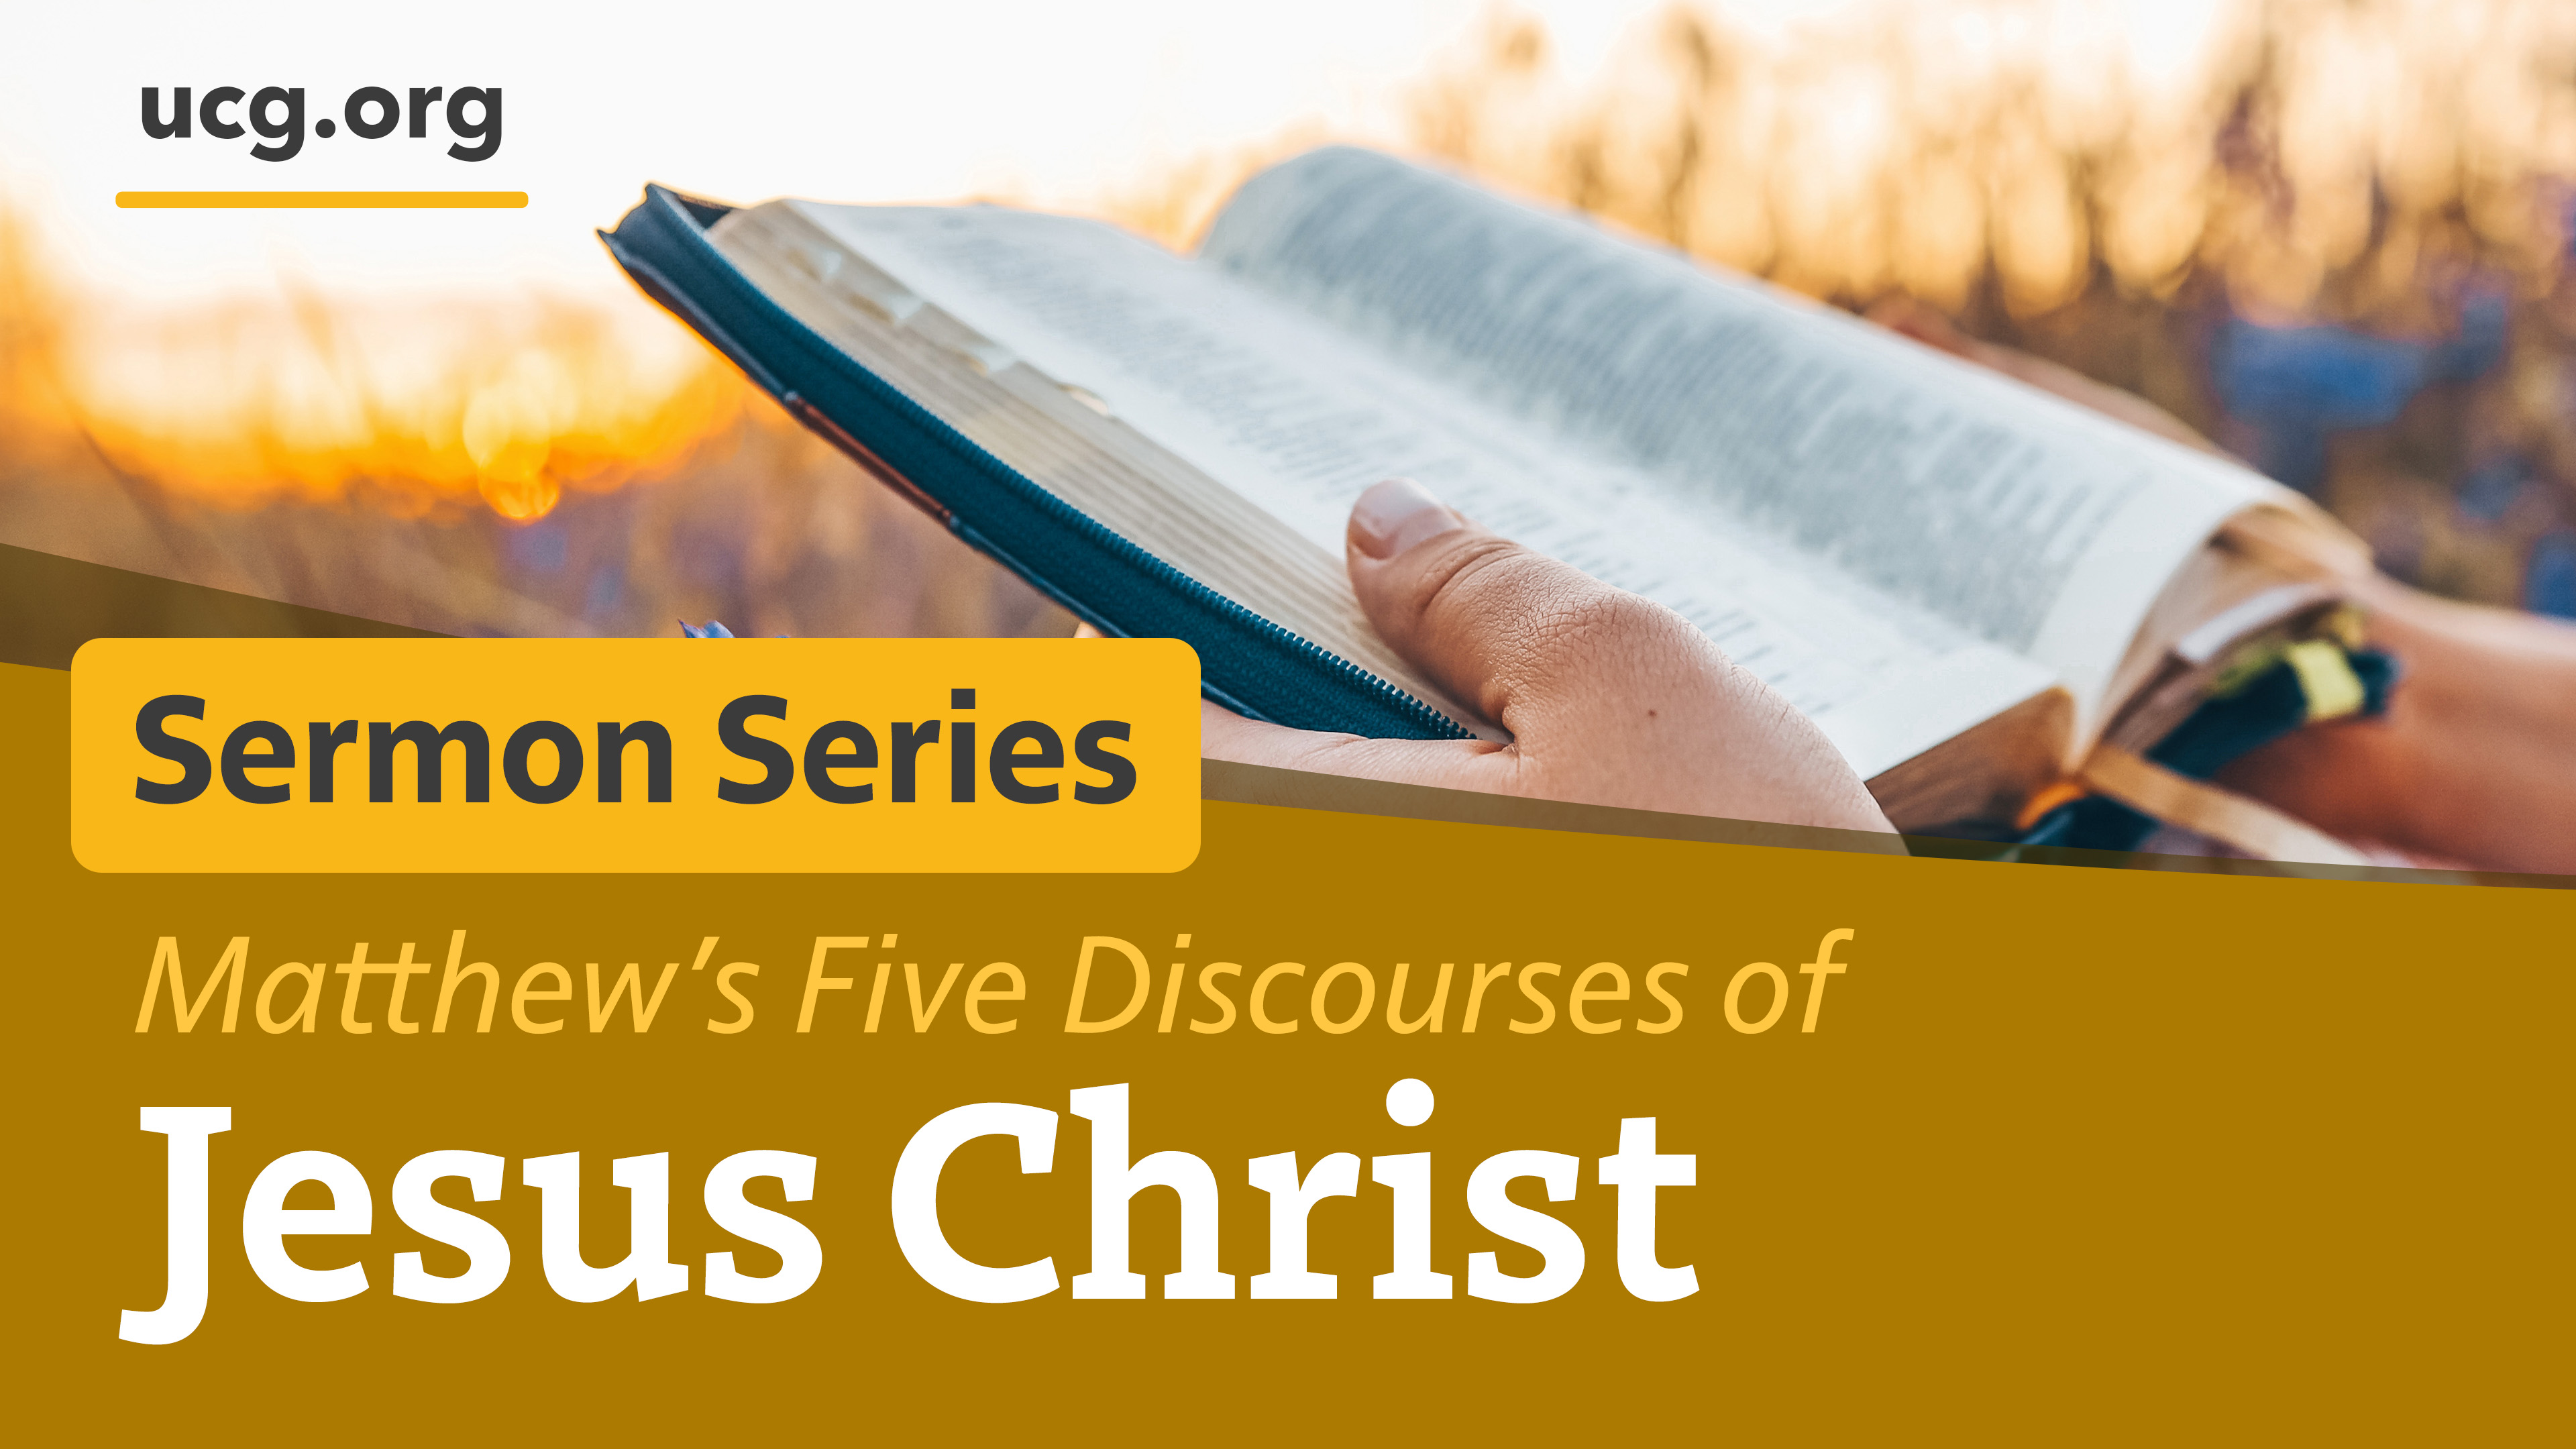 Matthew's Five Discources of Jesus Christ